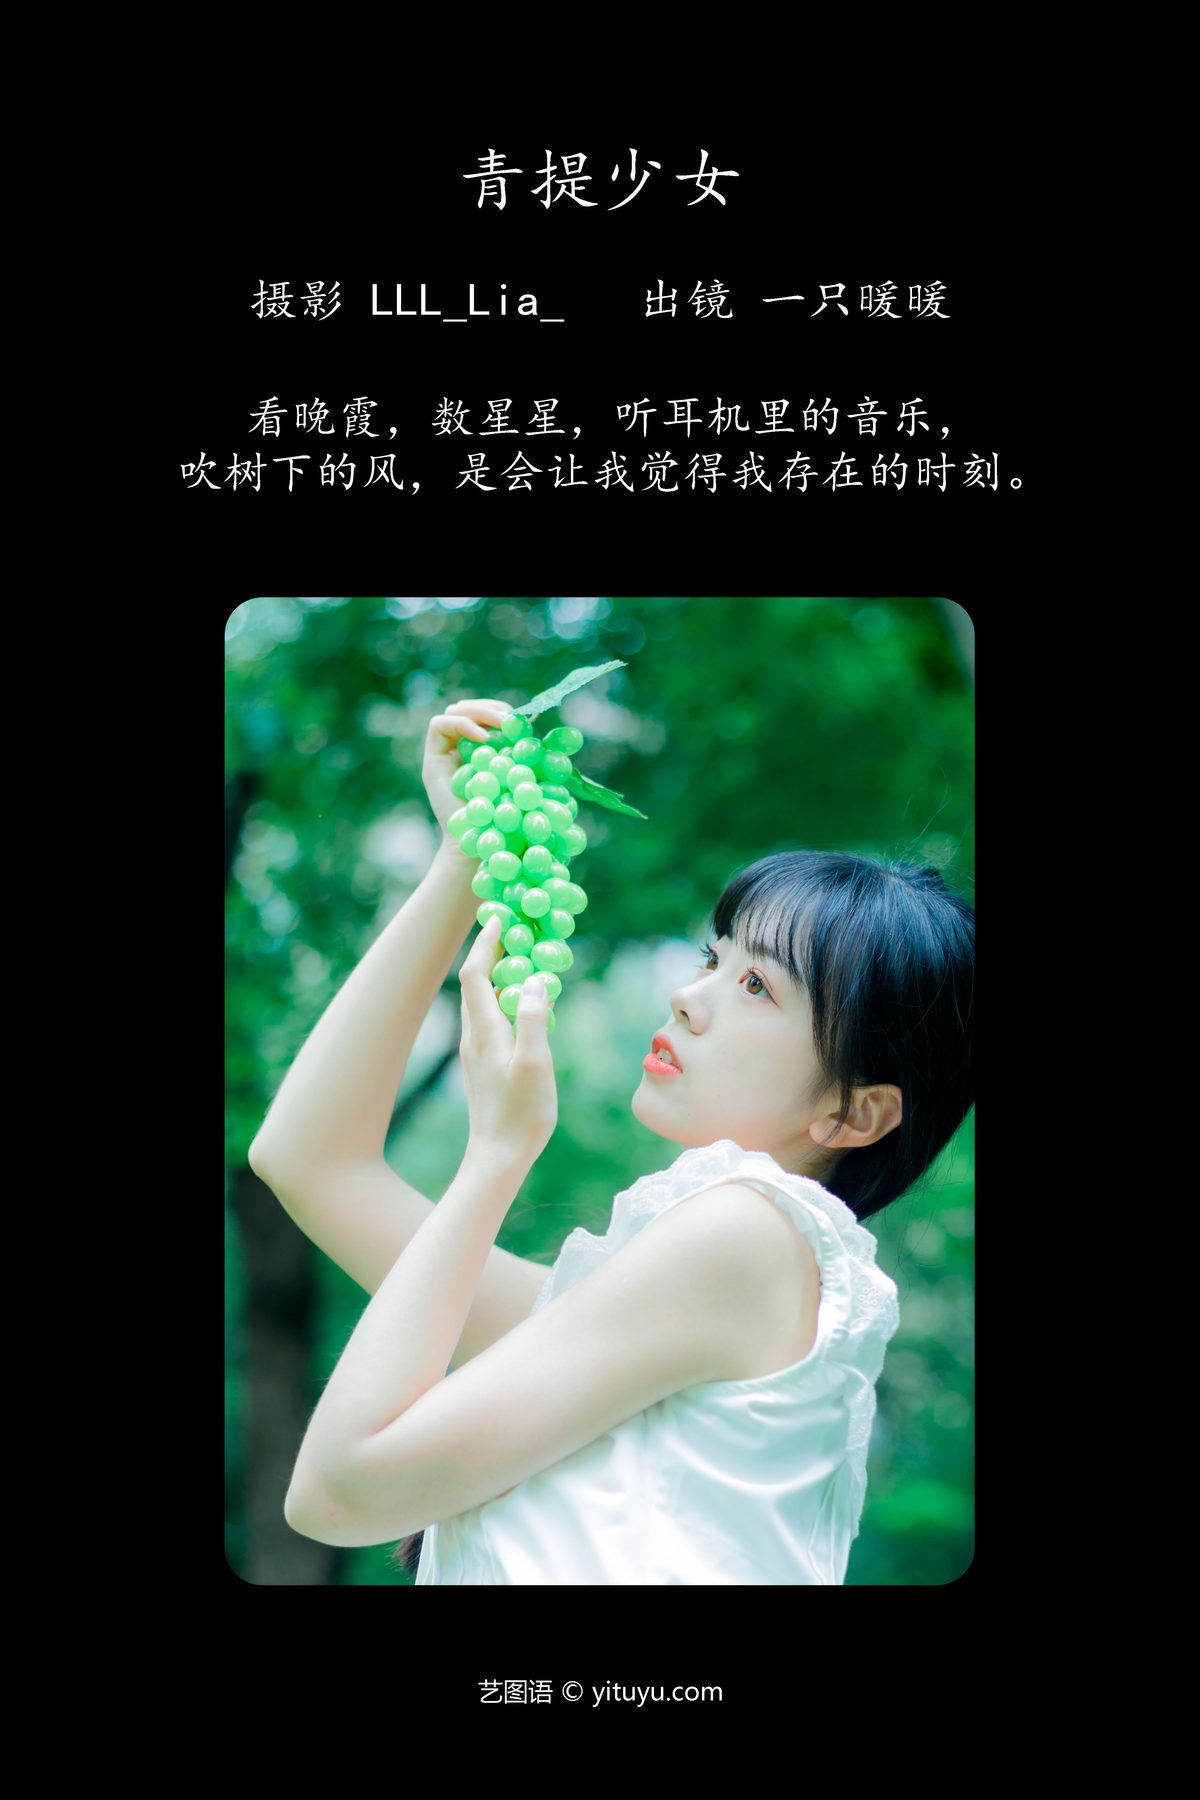 YiTuYu艺图语 Vol 4820 Yi Zhi Nuan Nuan 0002 5265217375.jpg